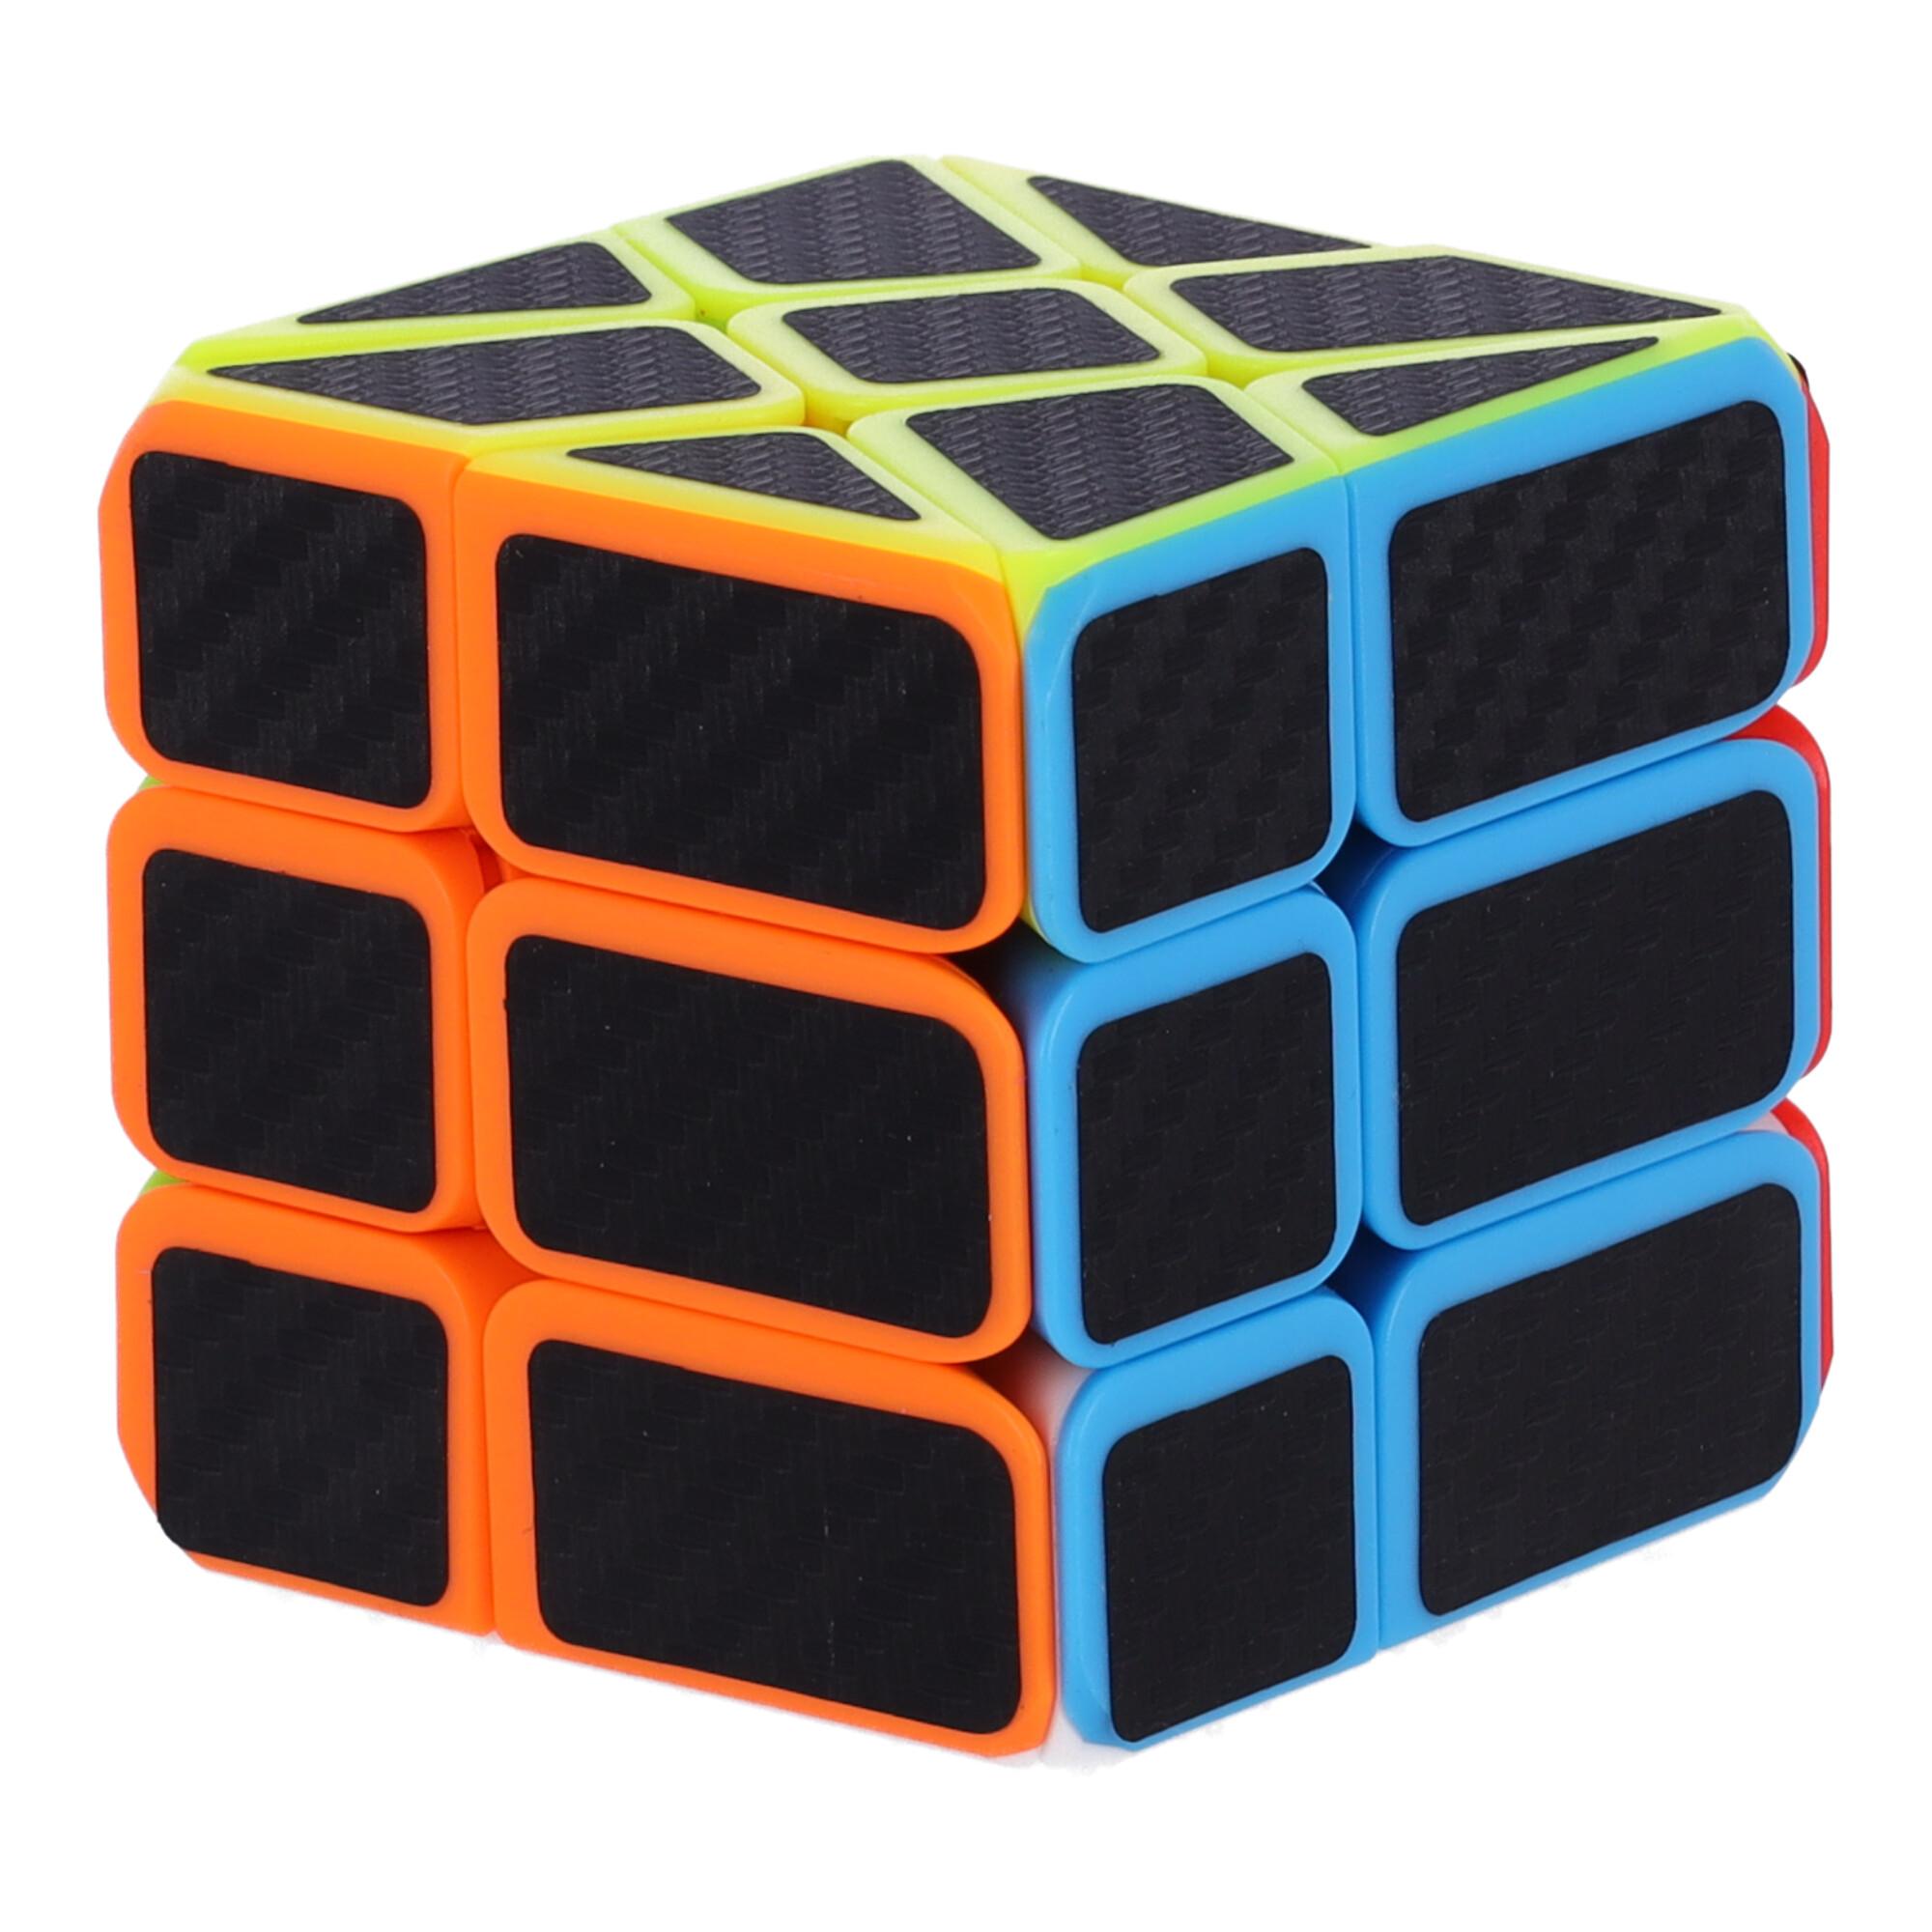 Nowoczesna układanka, kostka logiczna, Kostka Rubika - Hot Wheels, typ I